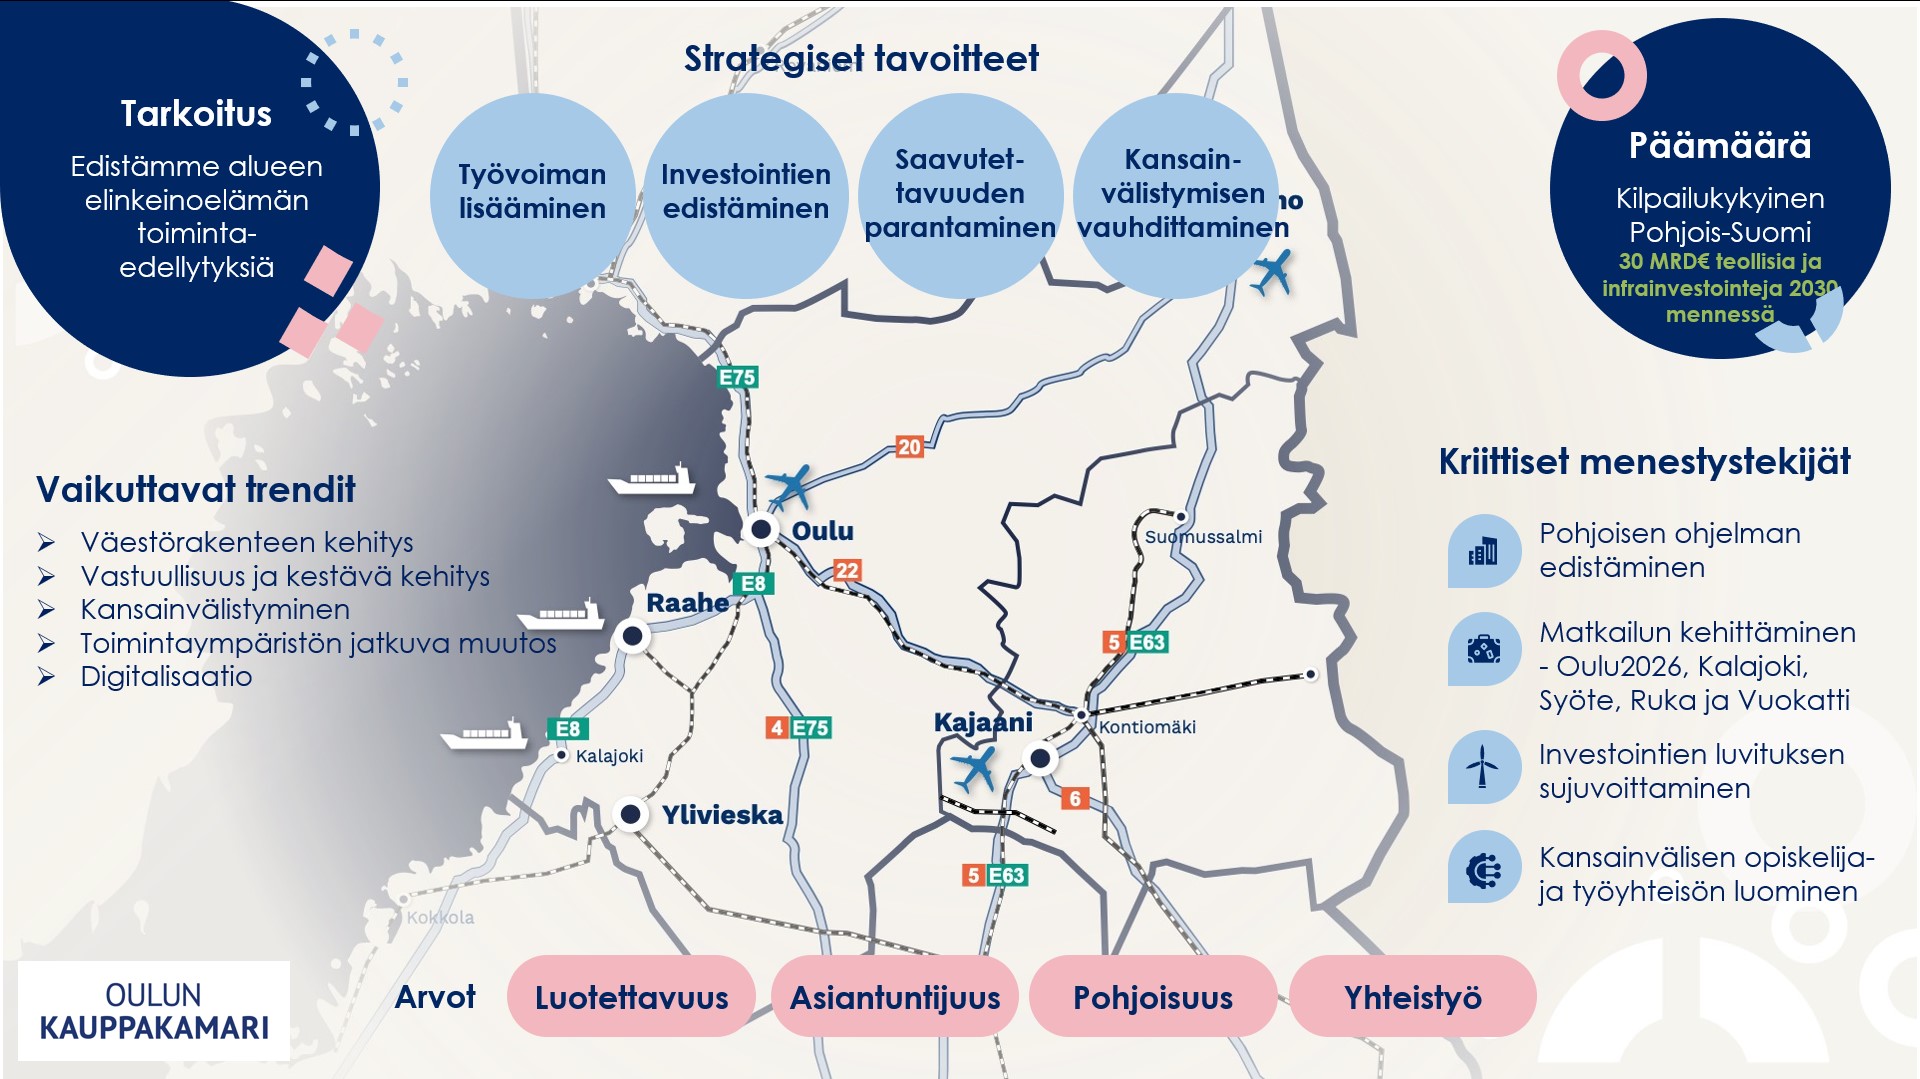 Kuvassa on kartta Oulun kauppakamarin alueesta, ja kuvaan on kirjattu mm. Oulun kauppakamarin strategiset tavoitteet ja arvot.